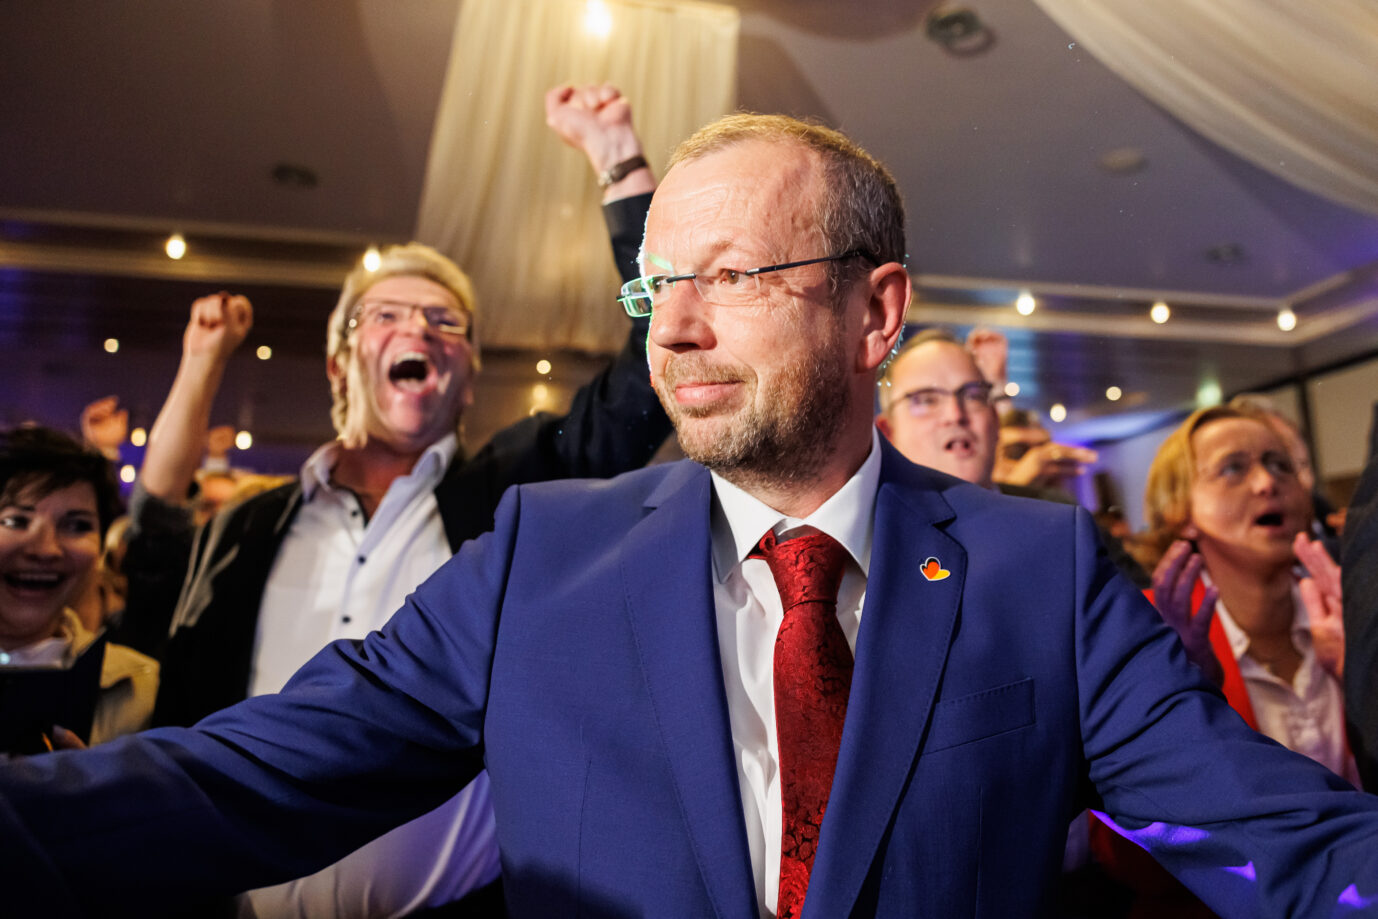 Auf dem Foto befindet sich Stefan Marzischewski-Drewes, Spitzenkandidat der AfD in Niedersachsen bei der Landtagswahl 2022. Er feiert gemeinsam mit anderen Mitgliedern den Wahlerfolg. (Themenbild/Symbolbild)